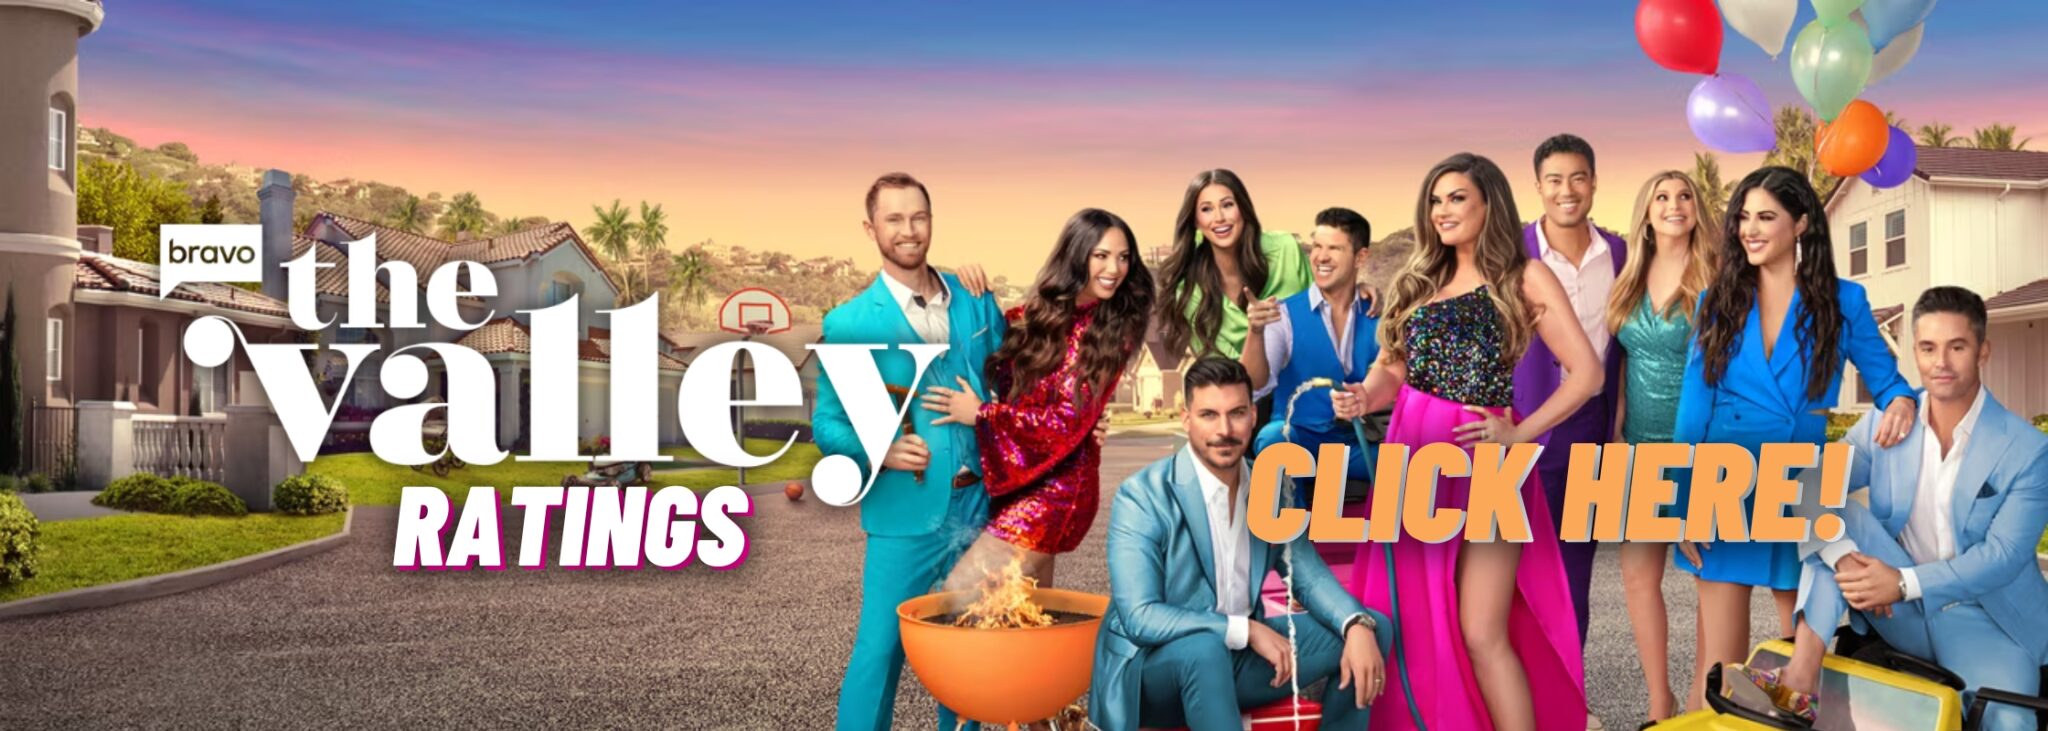 the valley season 1 ratings, vanderpump rules ratings, bravo tv ratings